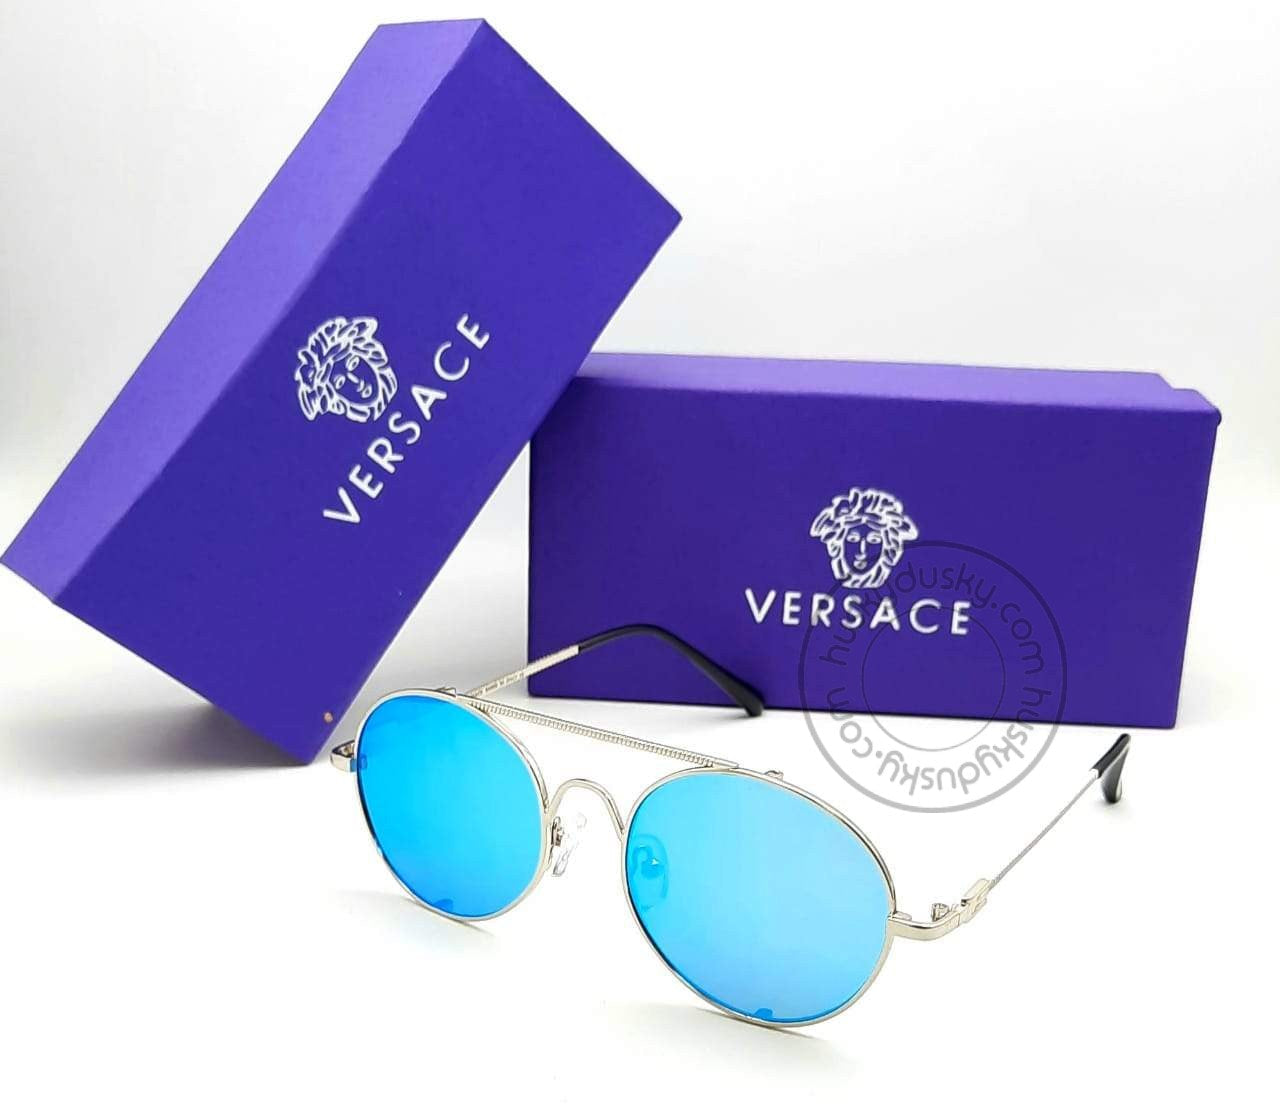 Versace Branded Aqua Blue Glass Men's Sunglass For Man VER-25628 Silver Frame Gift Sunglass